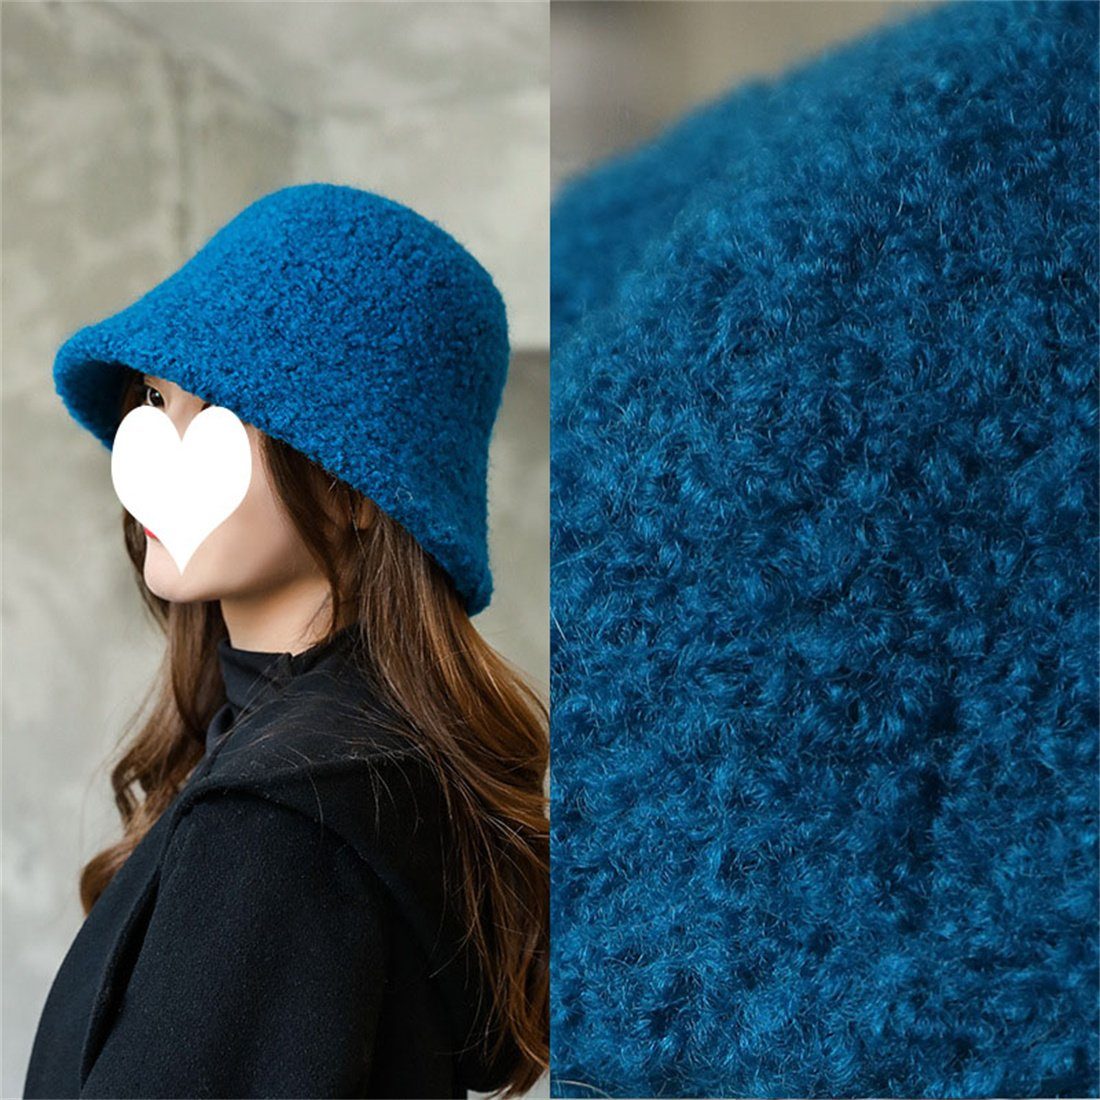 Mode Topf warmen Winter Hut blau Hut, lässig Fischer einfarbig Damen Fischerhut DÖRÖY Plüsch